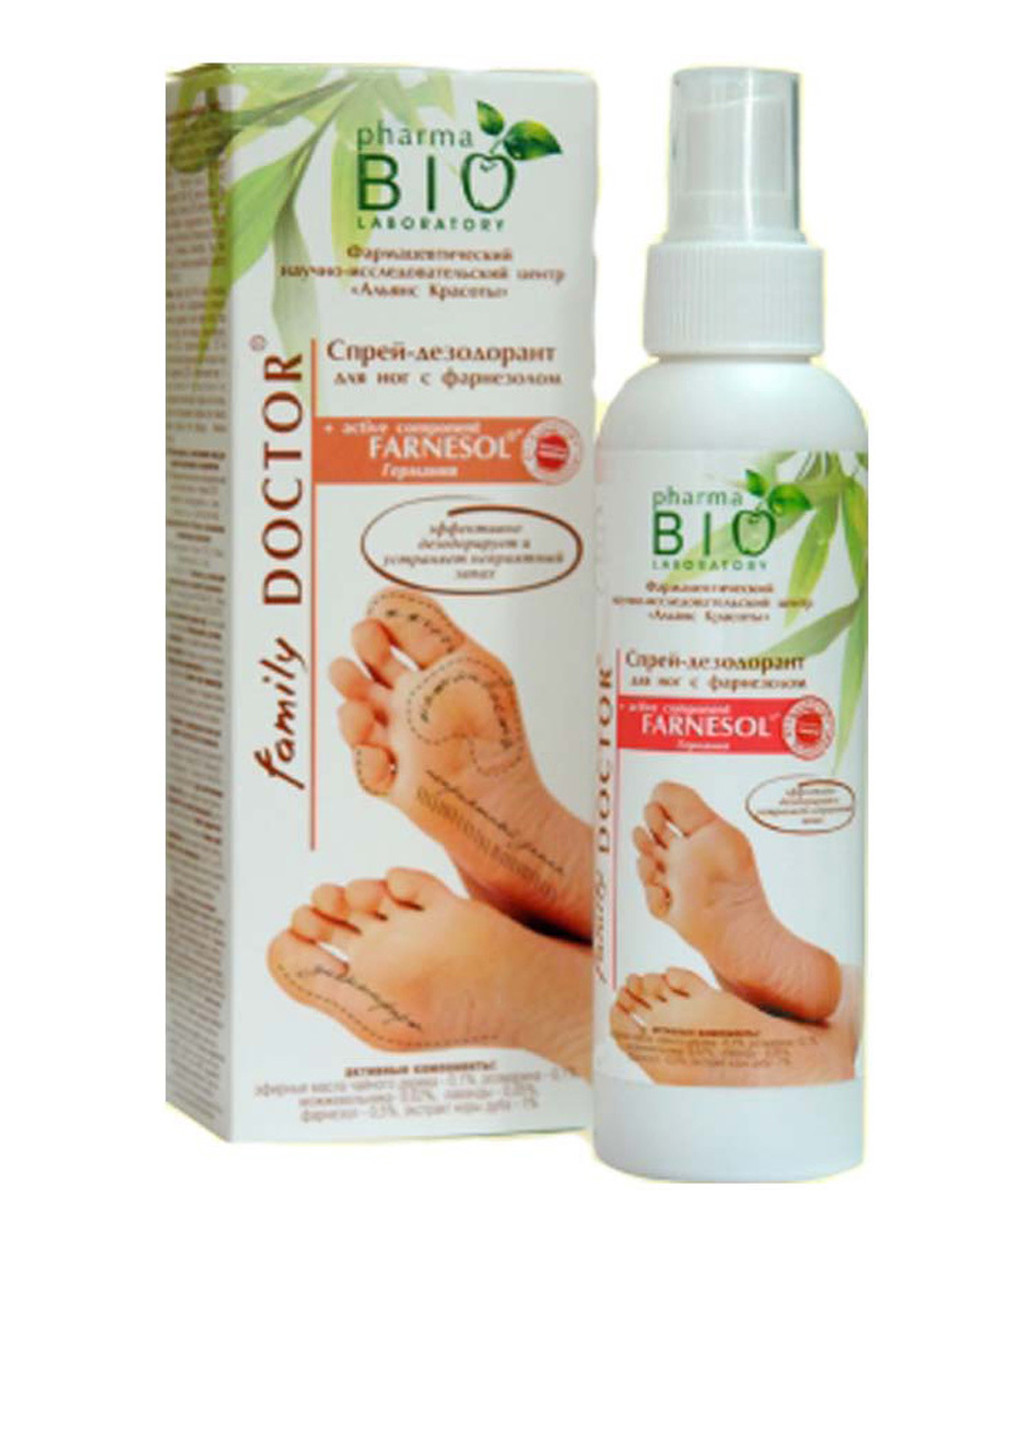 Спрей-дезодорант для ног с фарнезолом, 150 мл Pharma Bio Laboratory (95228861)